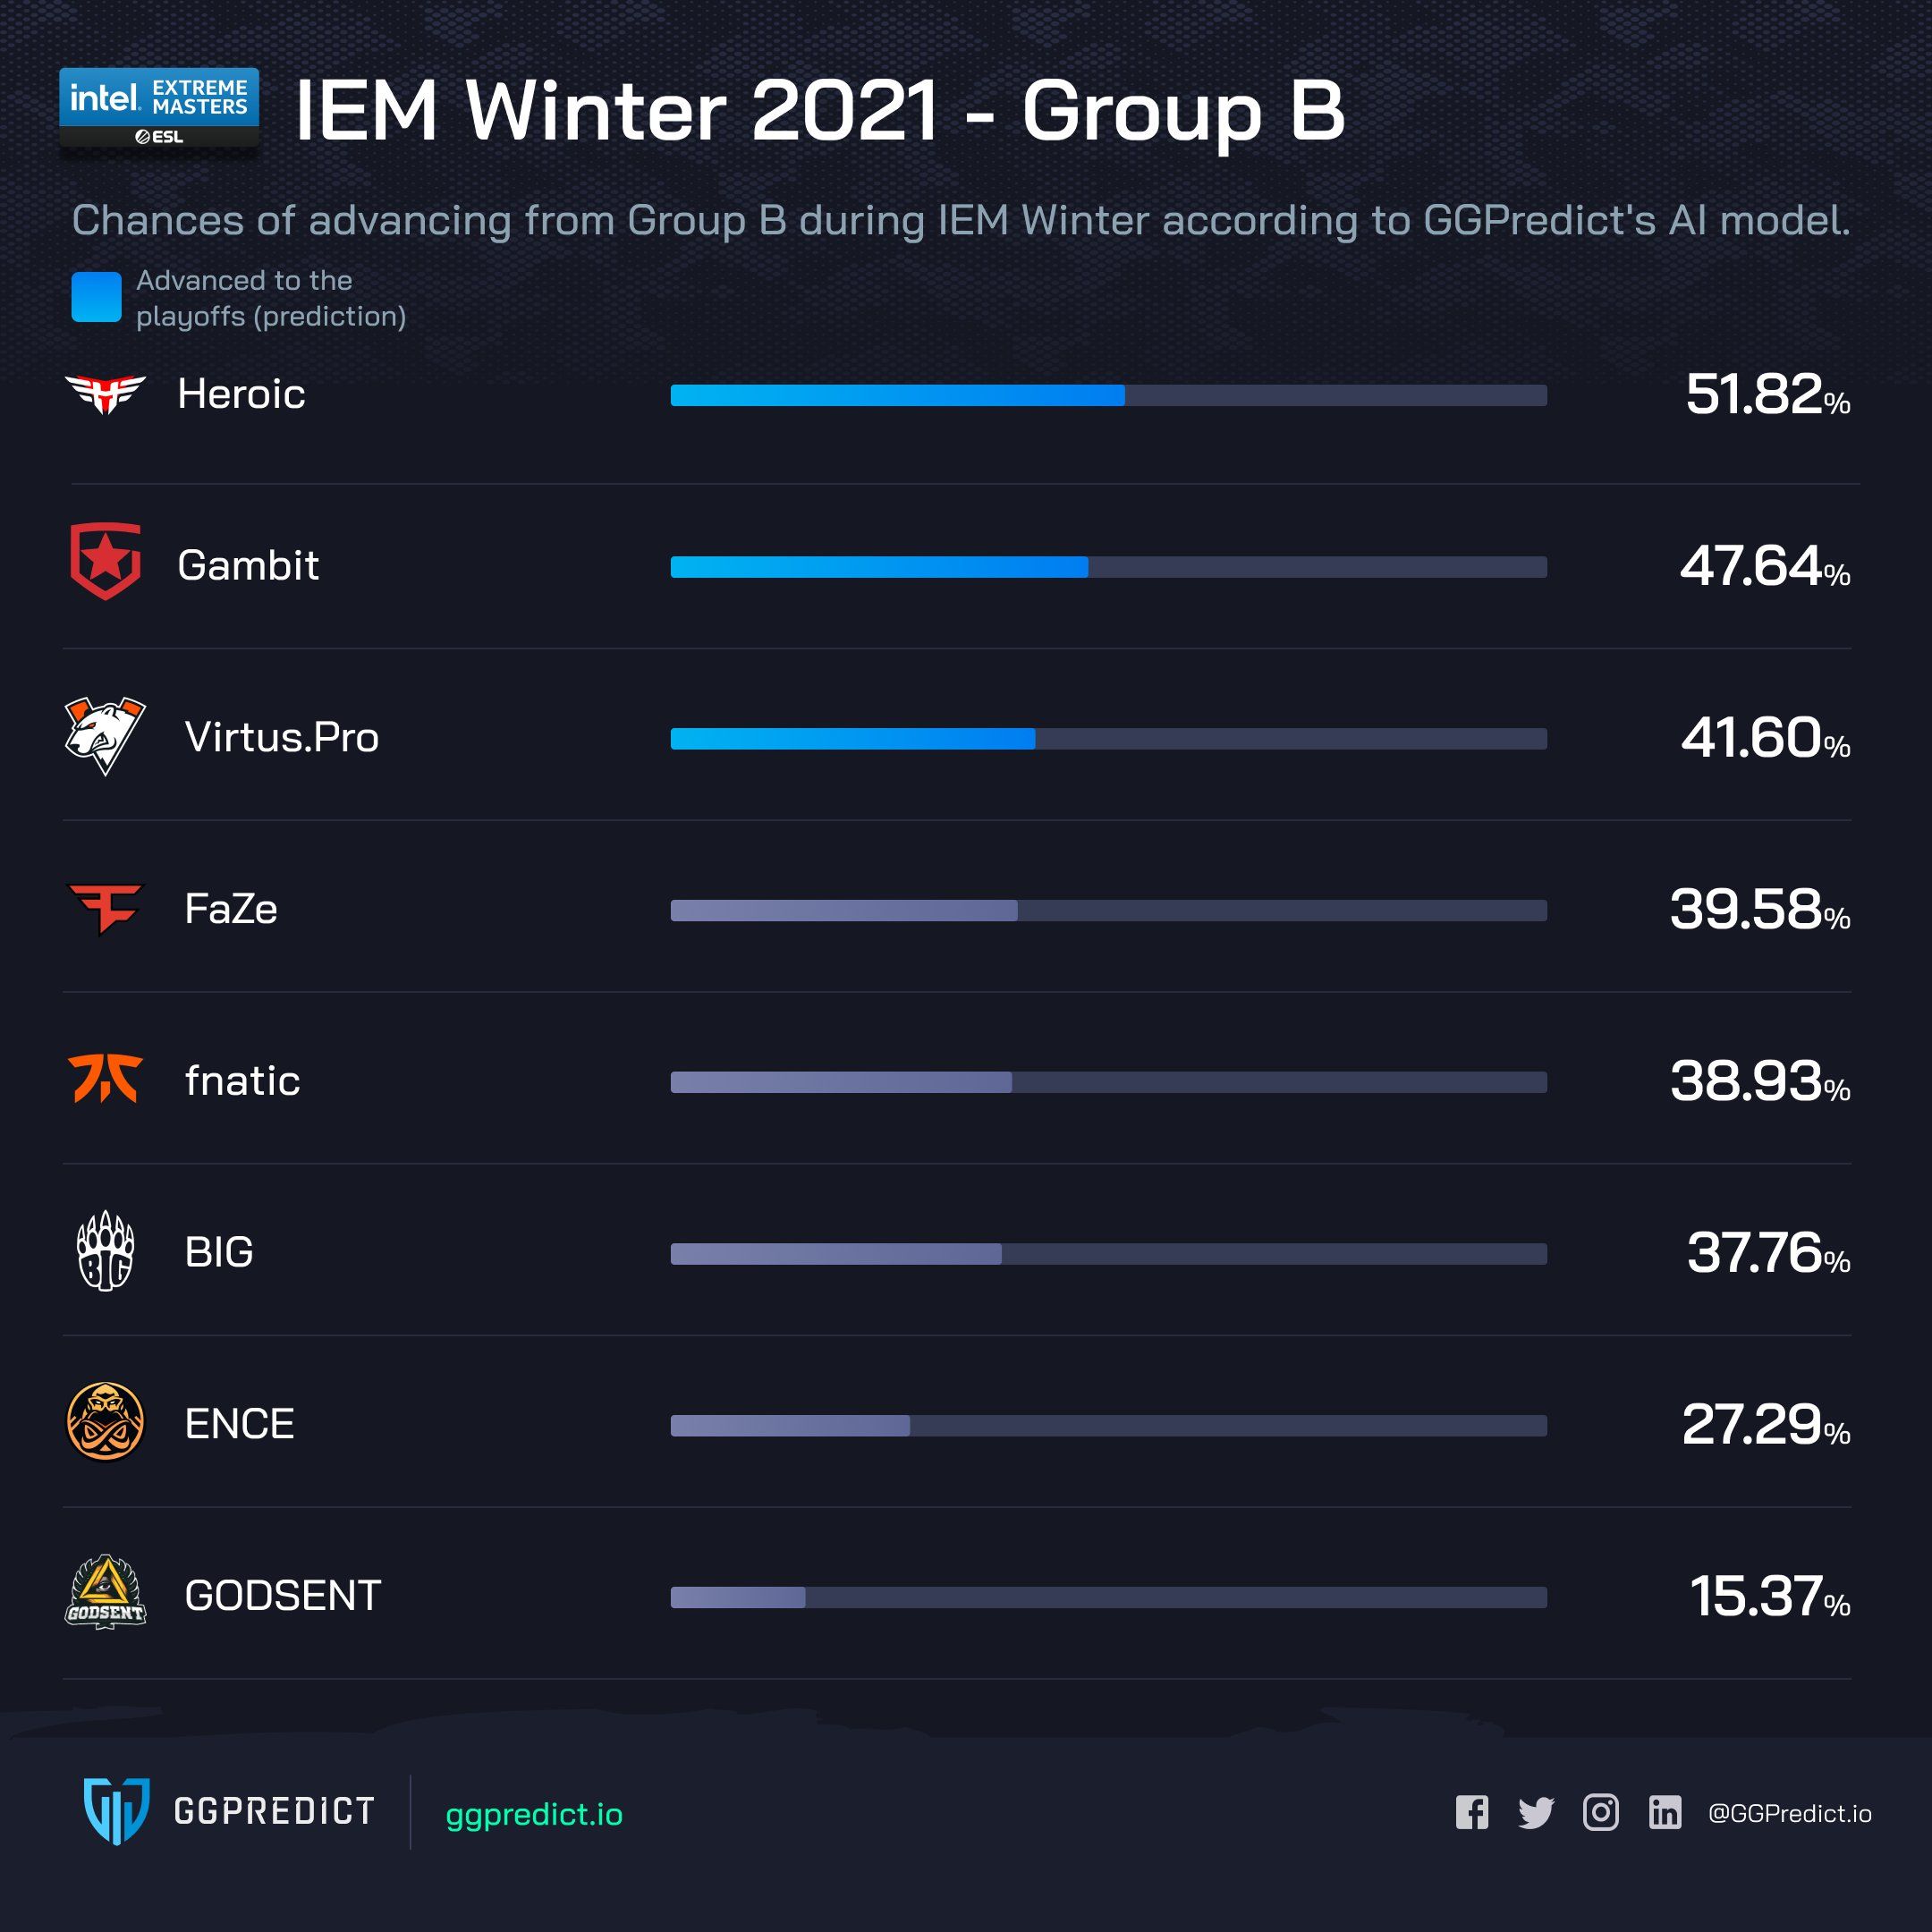 Шансы участников группы B выйти в плей-офф IEM Winter 2021.
Источник: GGPredict.io